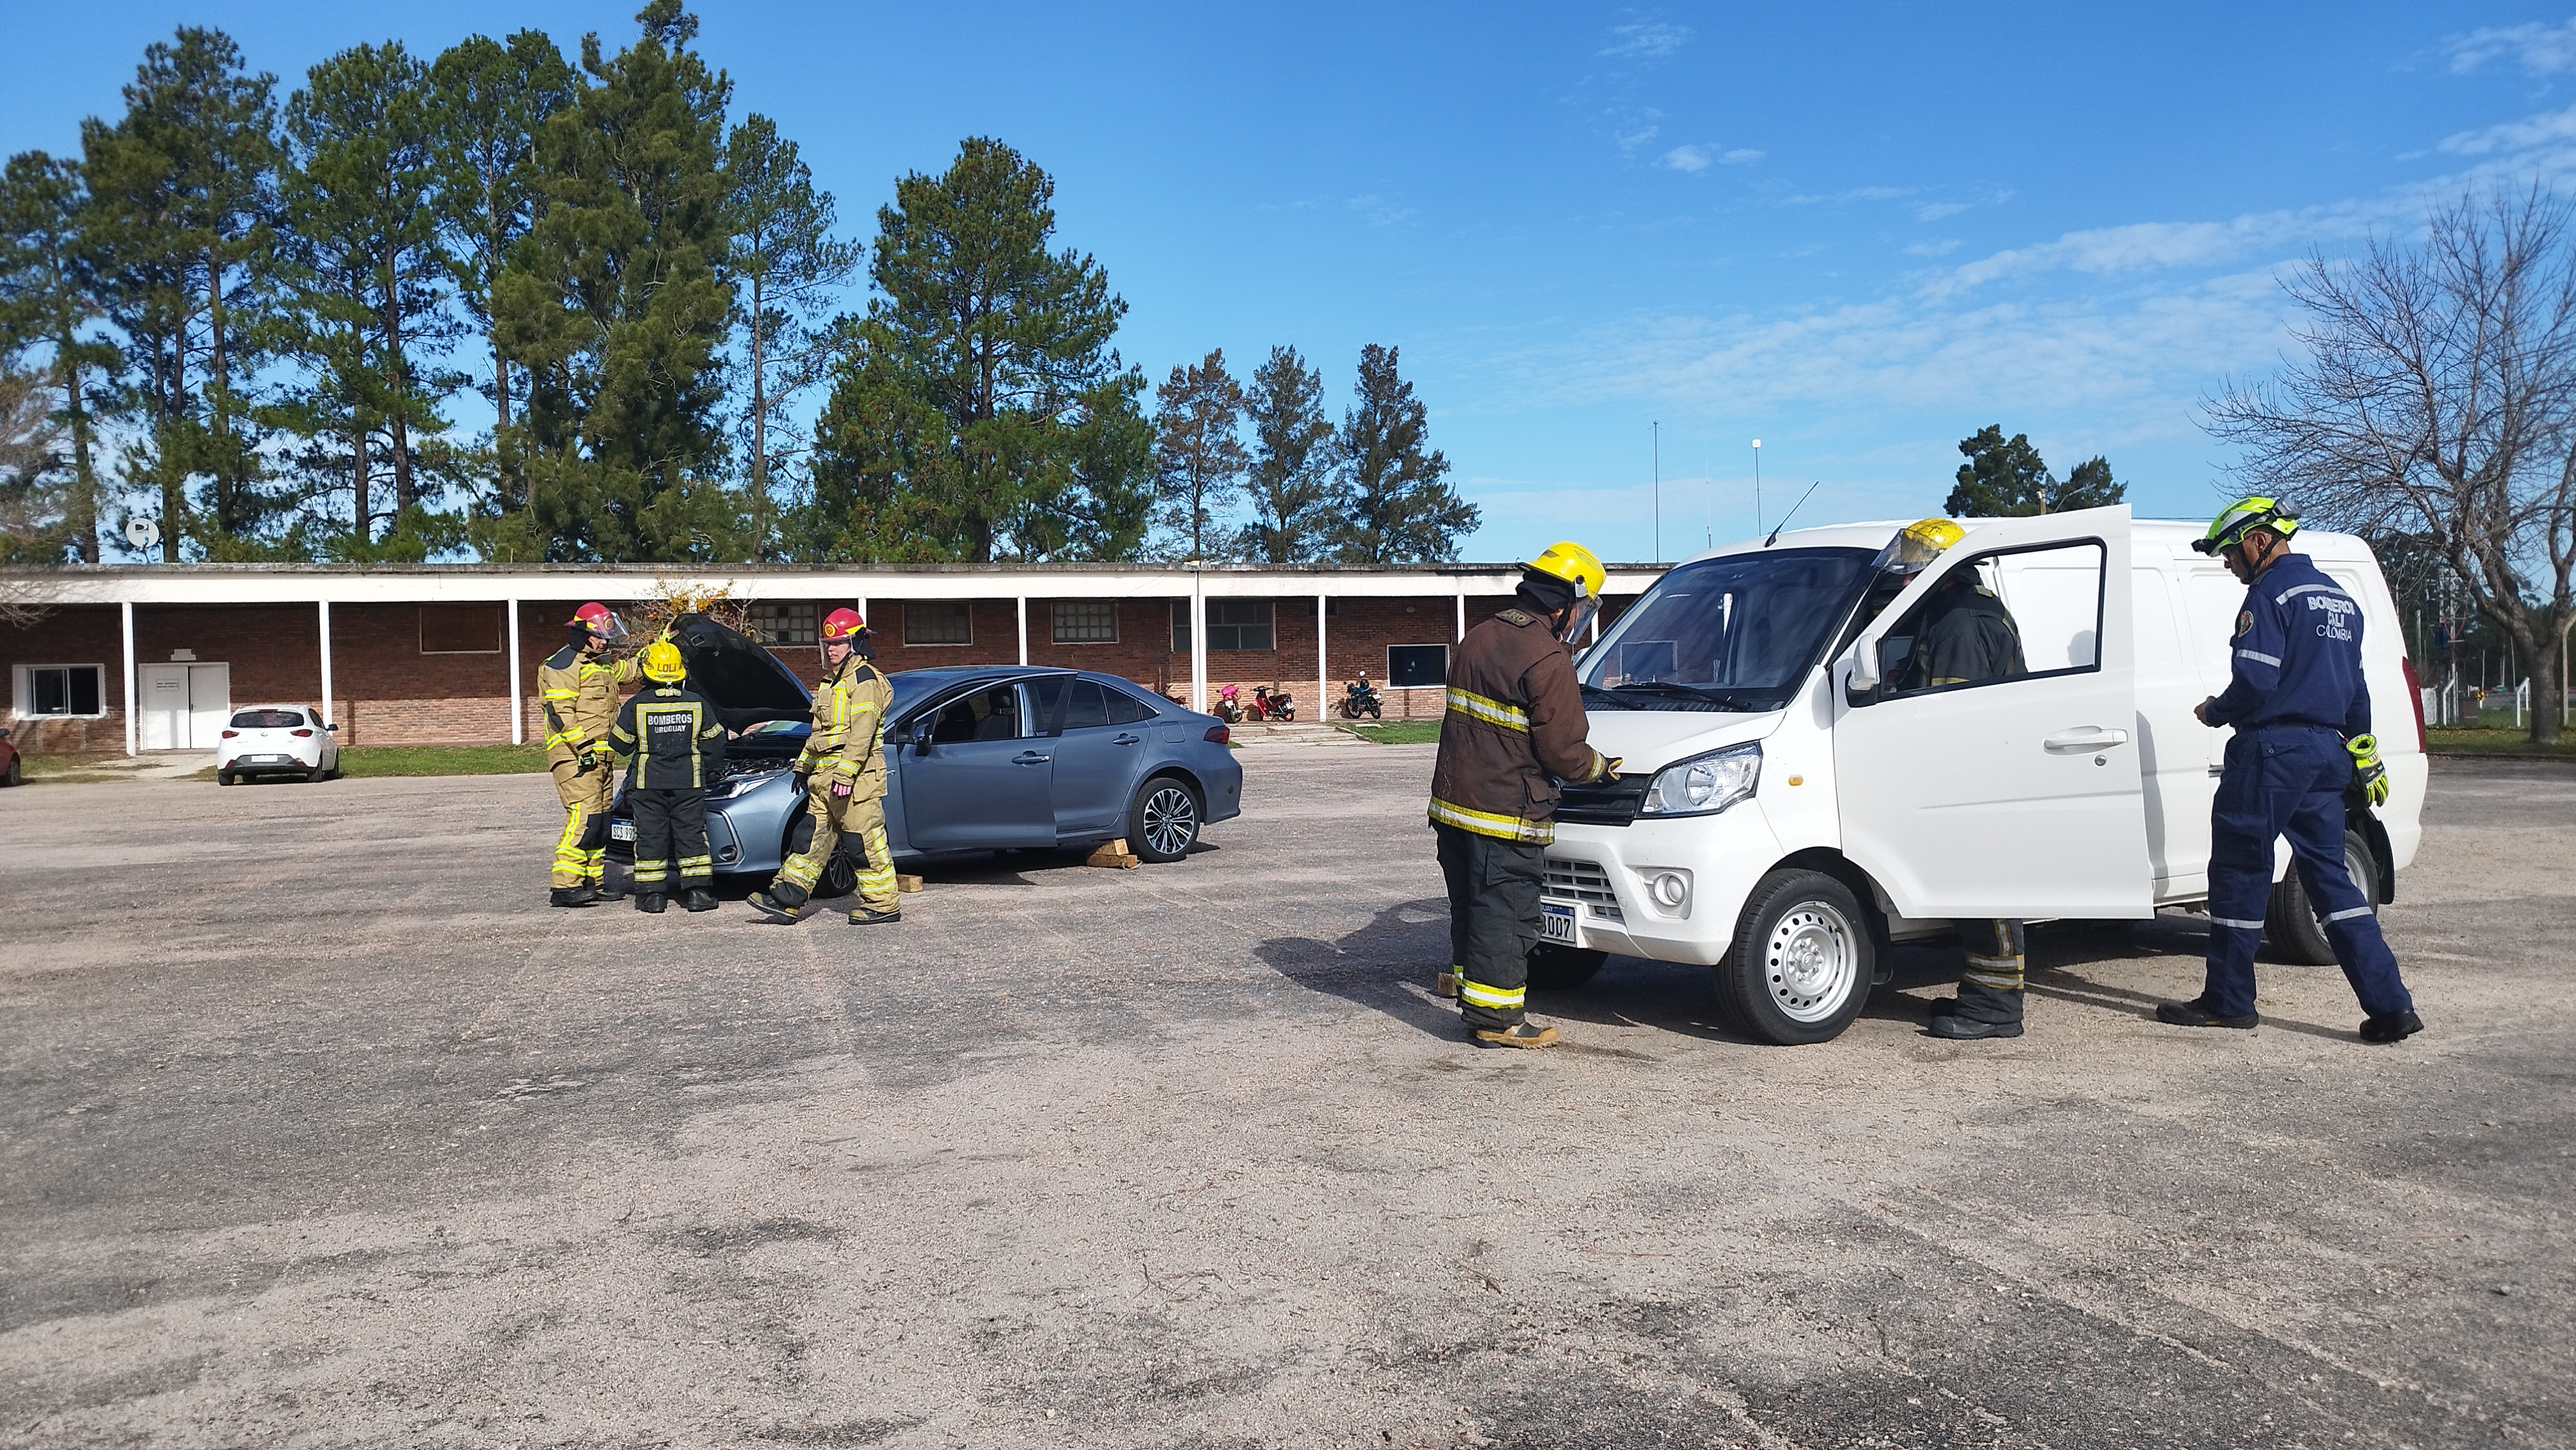 IMG_20230511_145120.jpg - El pasado jueves 11 de mayo culminó la &#034;Capacitación para bomberos sobre manejo de incidentes relacionados con la movilidad eléctrica&#034; en donde se capacitaron a 25 bomberos en la Base Aérea de Santa Bernardina del departamento de Durazno. Esta capacitación es la continuación del primer curso regional que organizó la plataforma MOVE del Programa de la Naciones Unidas para el Medio Ambiente a finales de 2022 en Paraguay, donde participaron y se formaron dos bomberos instructores de Uruguay.